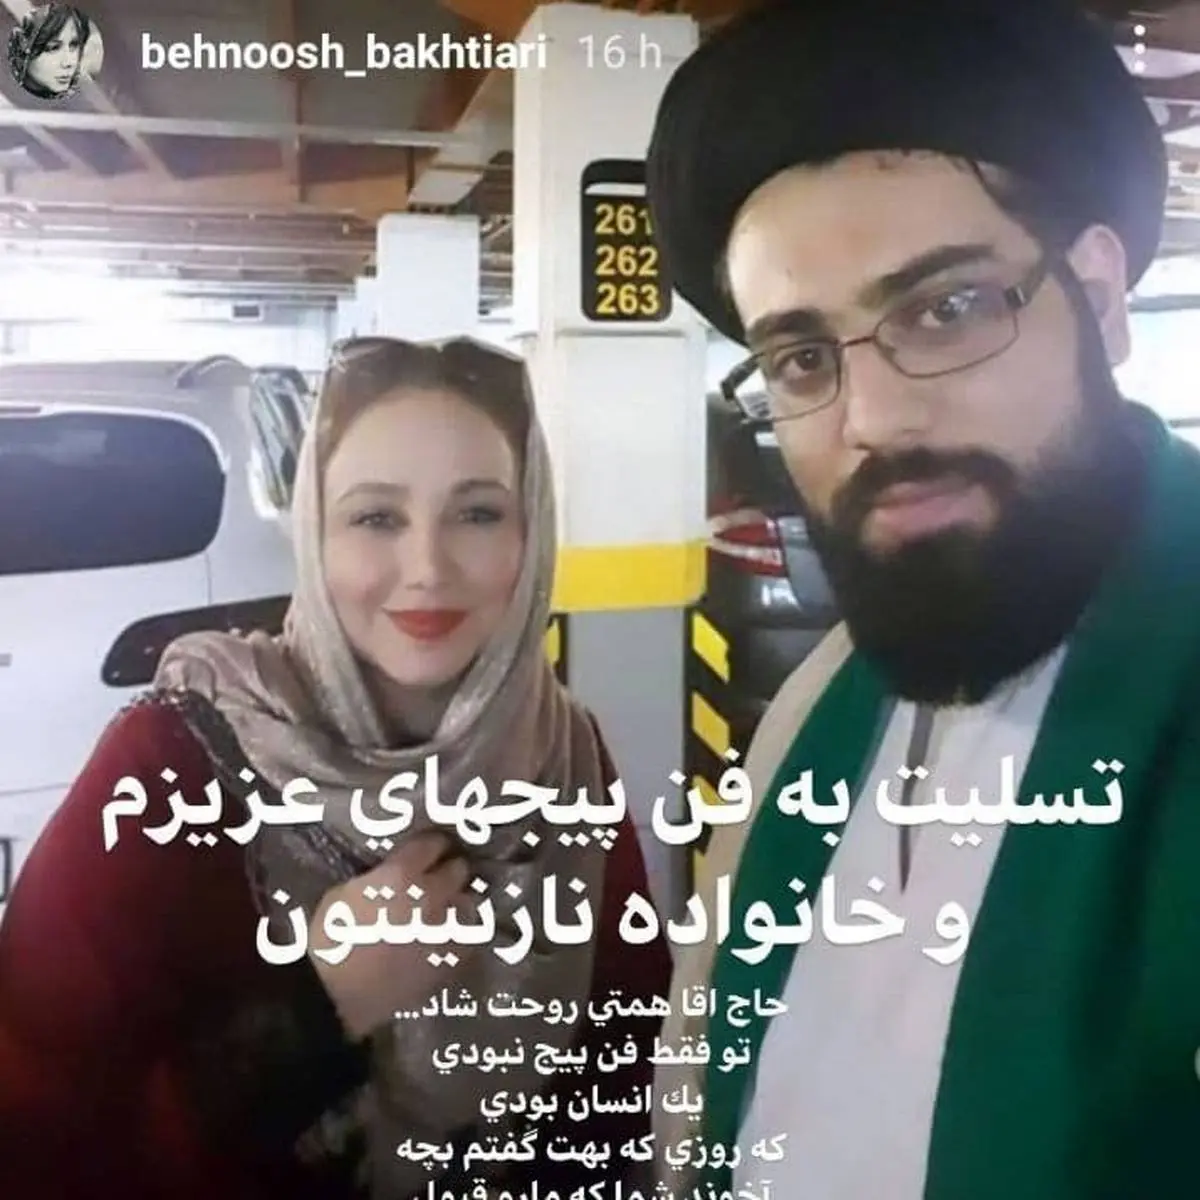 ادمین بهنوش بختیاری به قتل رسید + عکس